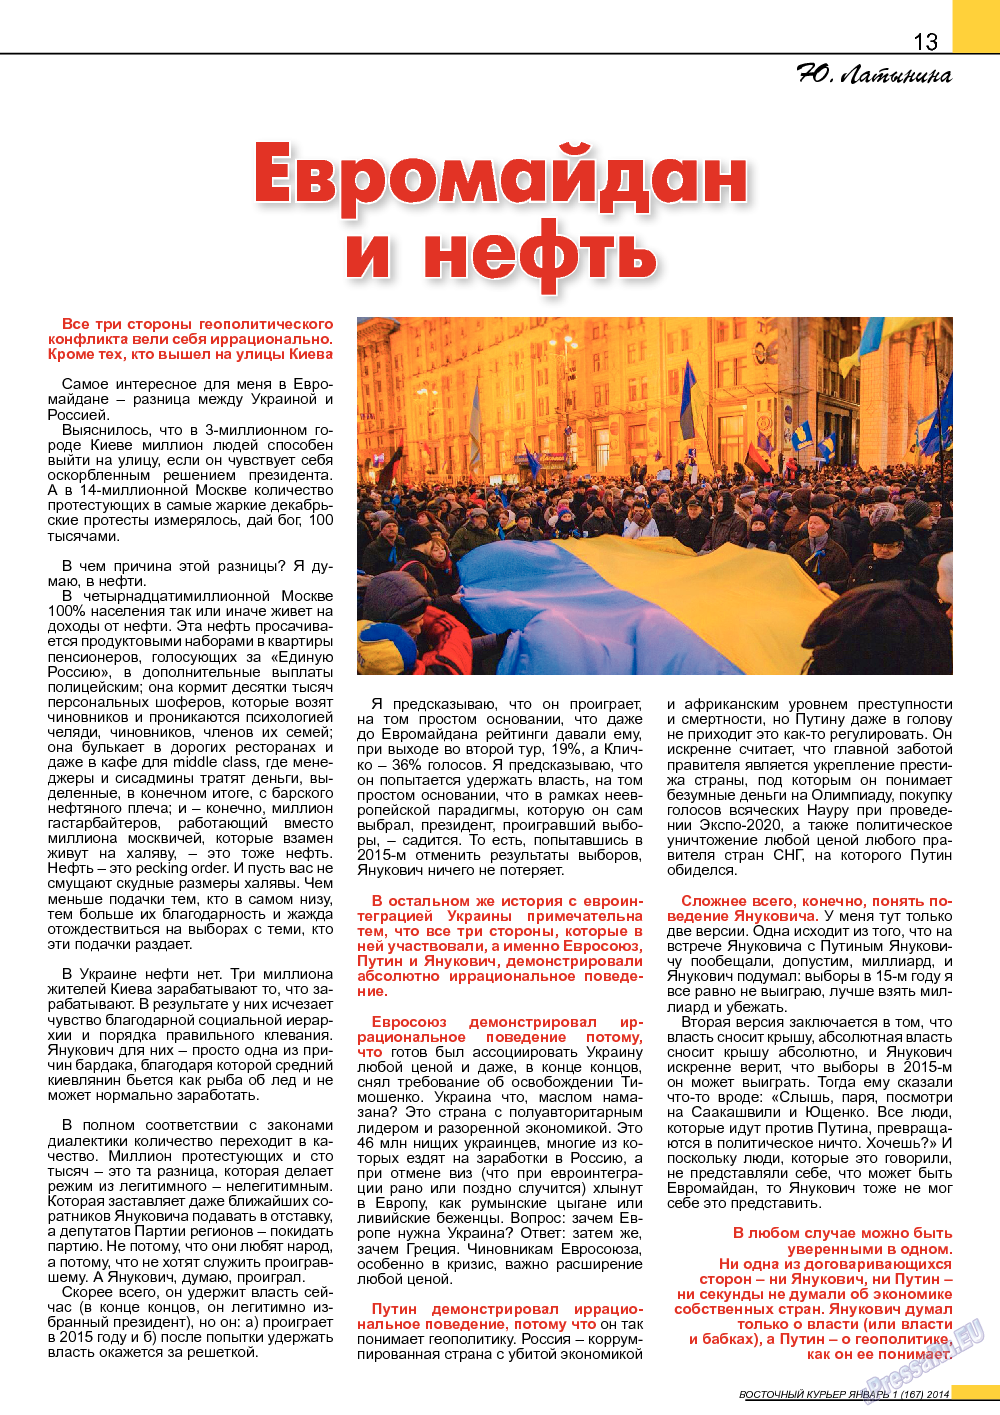 Восточный курьер, журнал. 2014 №1 стр.13